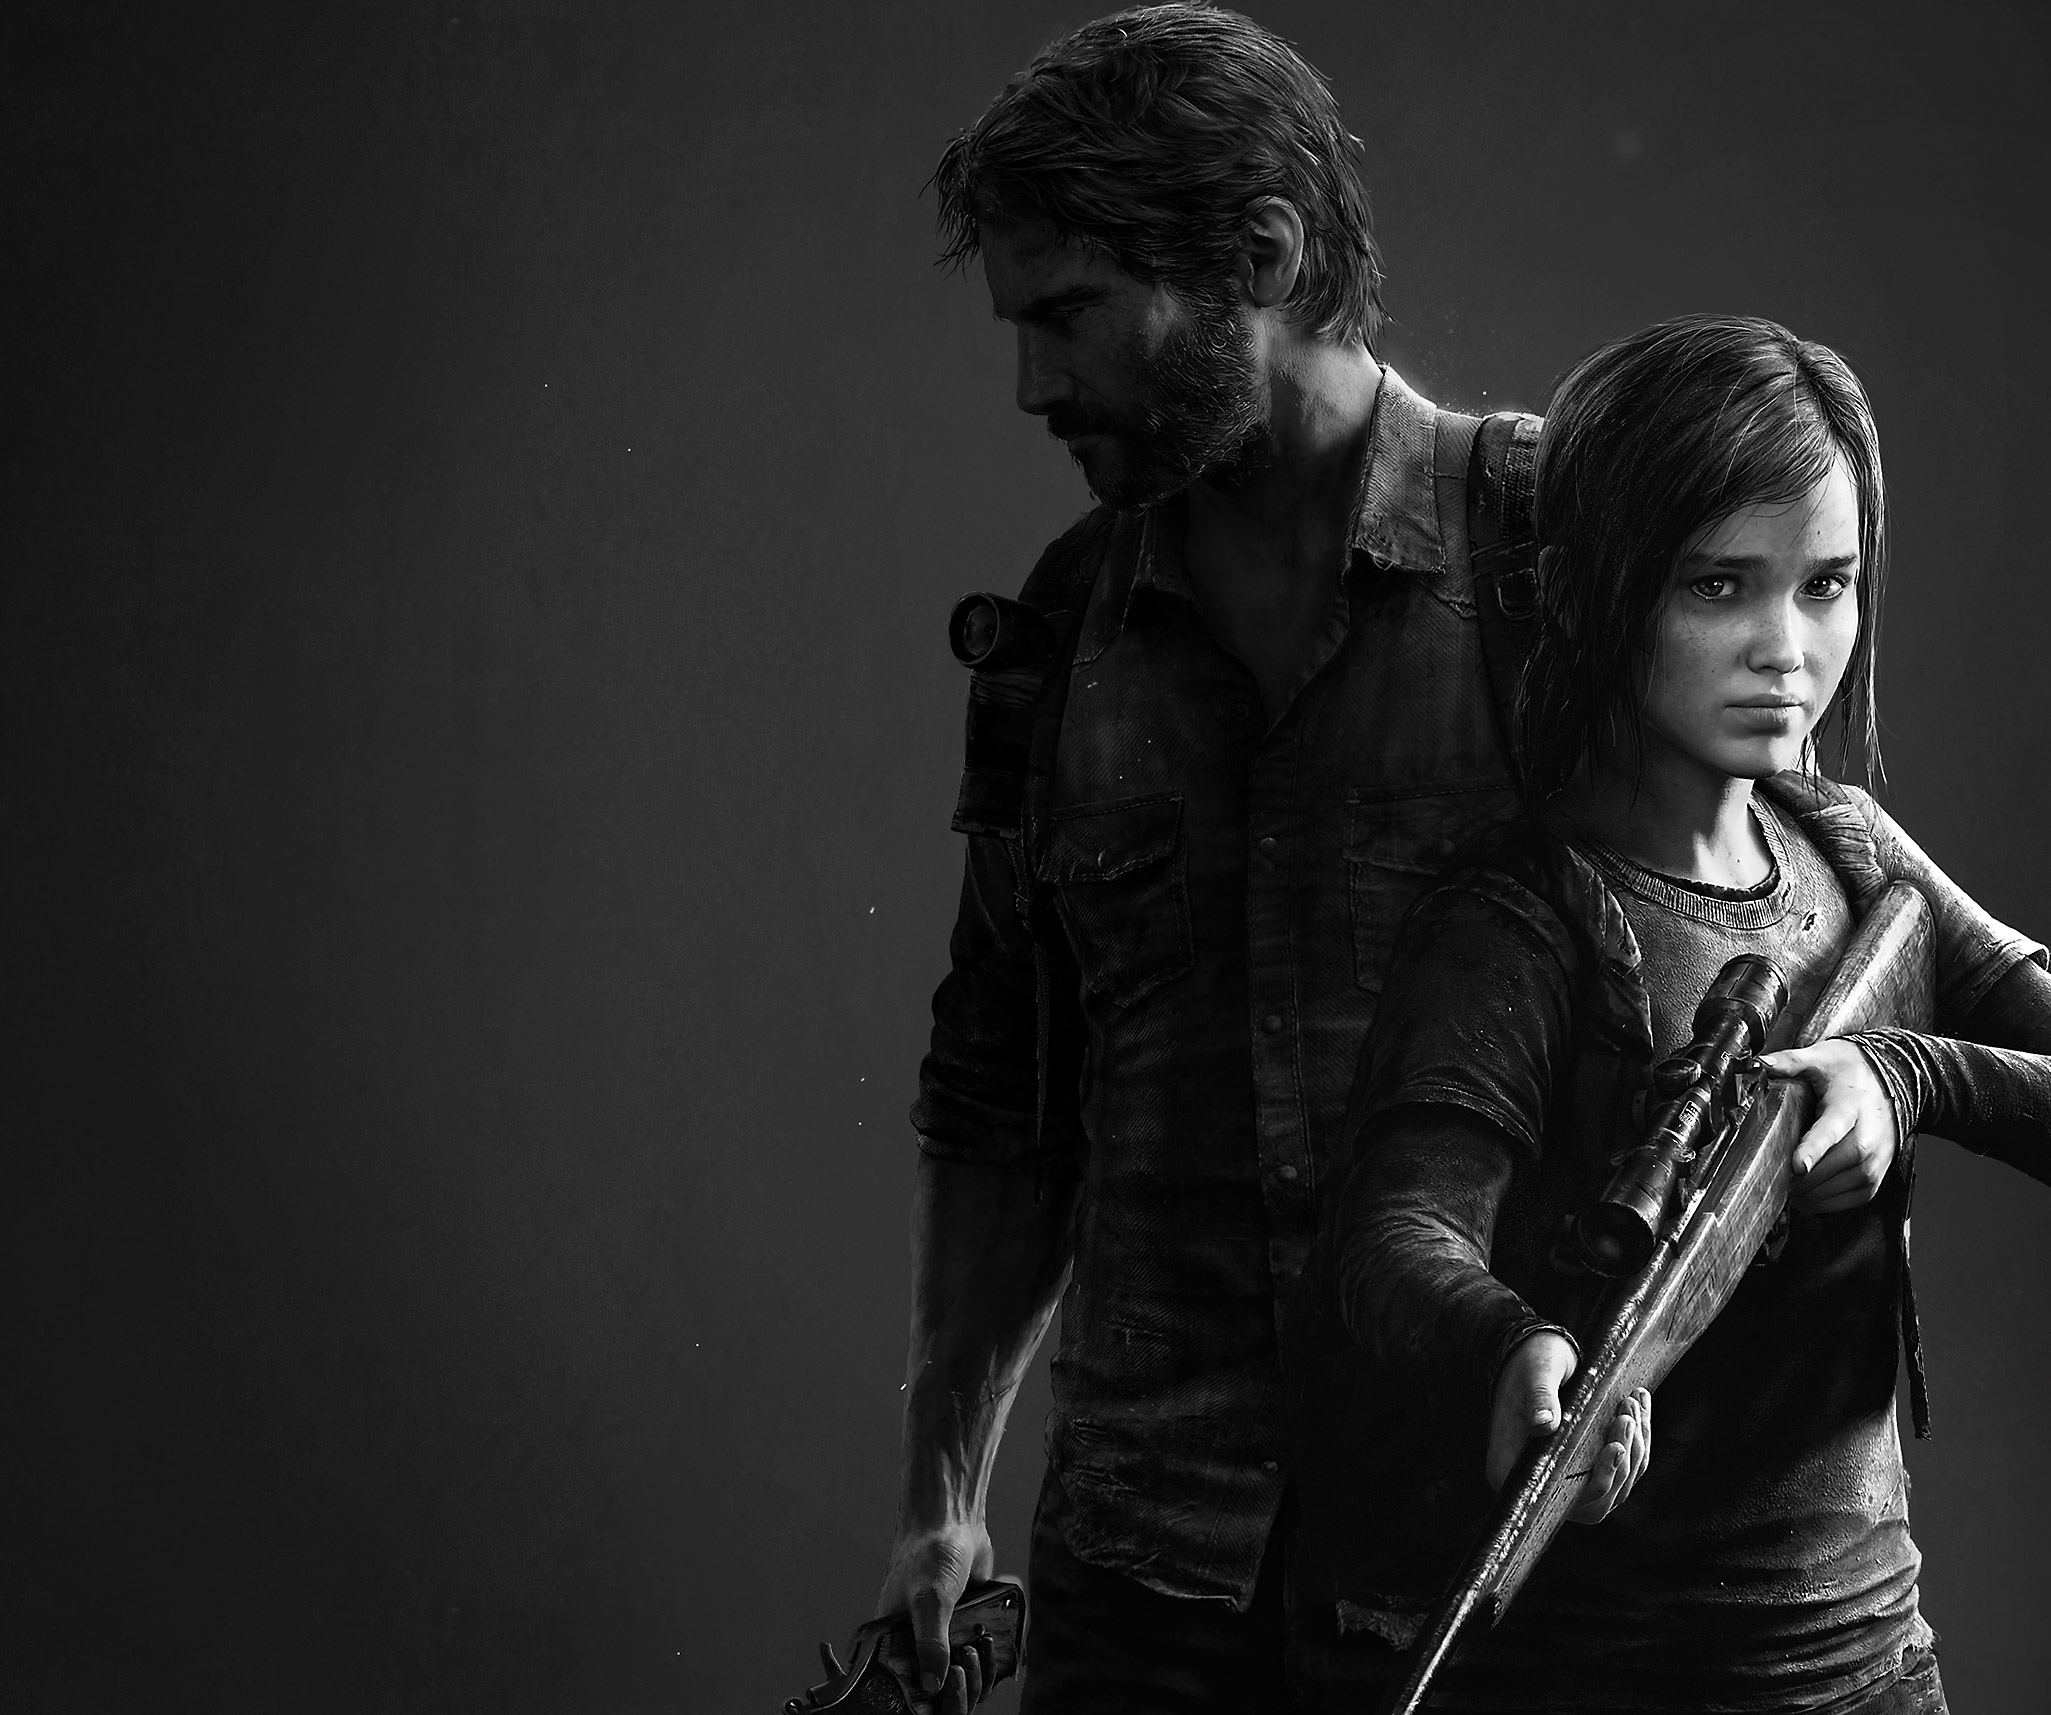 Immagine principale di The Last of Us Remastered che mostra una versione in bianco e nero dei personaggi principali Joel ed Ellie.